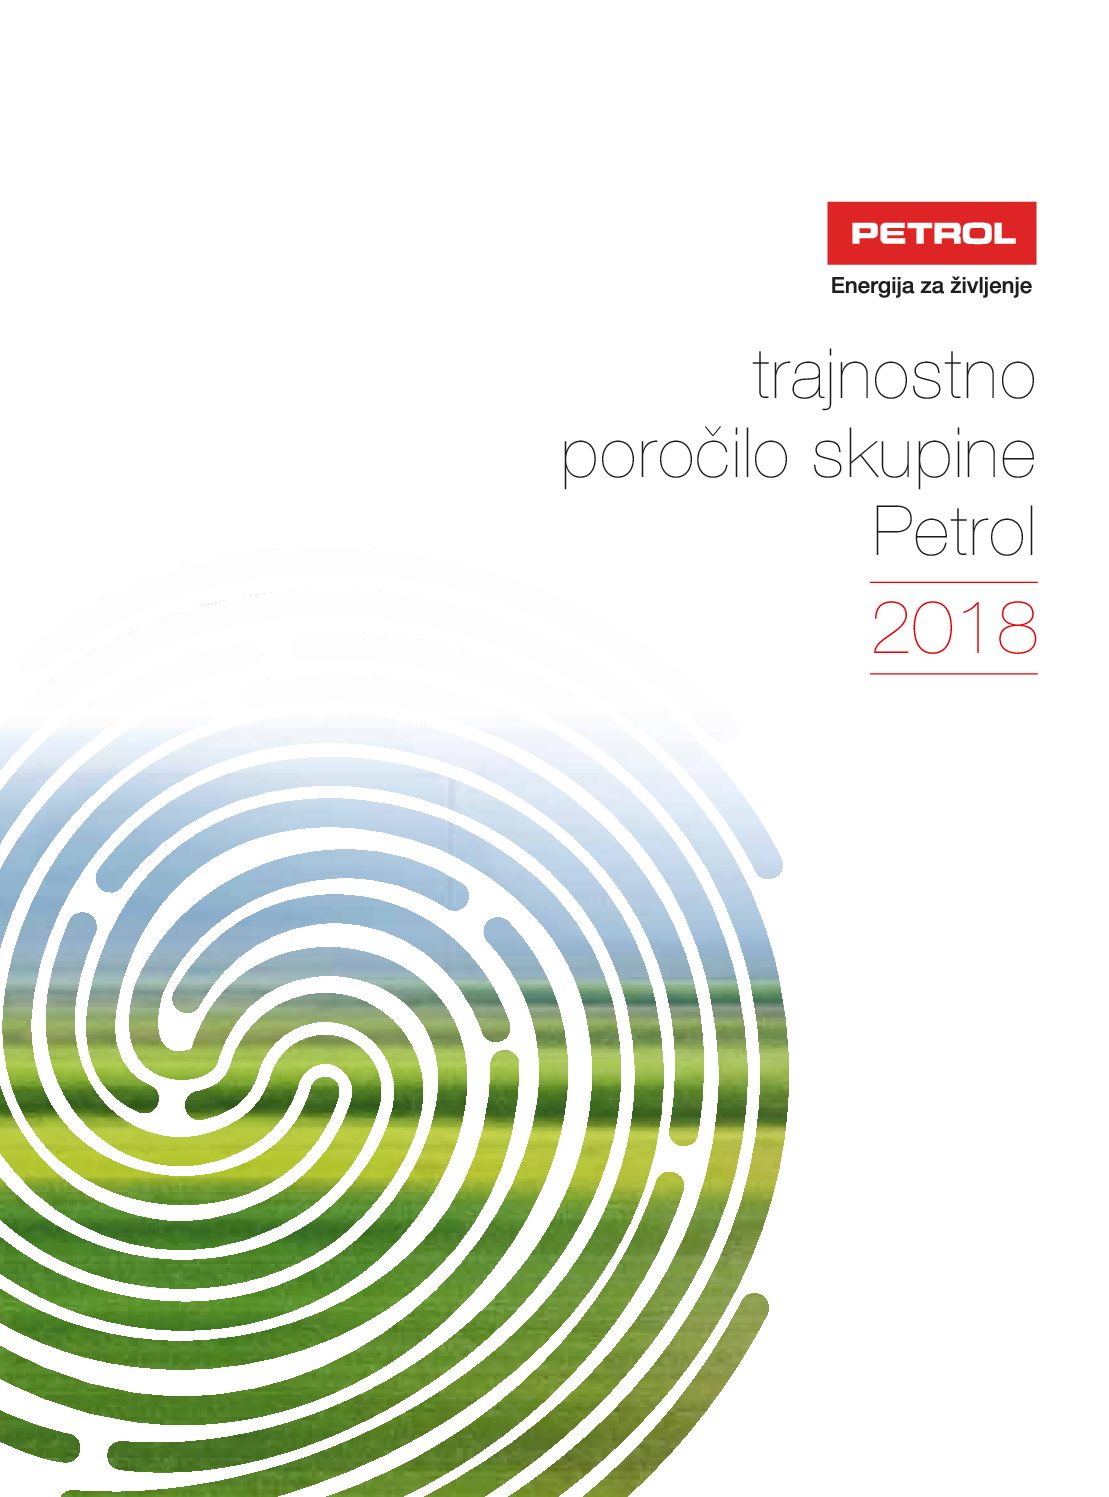 Trajnostno porocilo skupine Petrol 2018 pdf